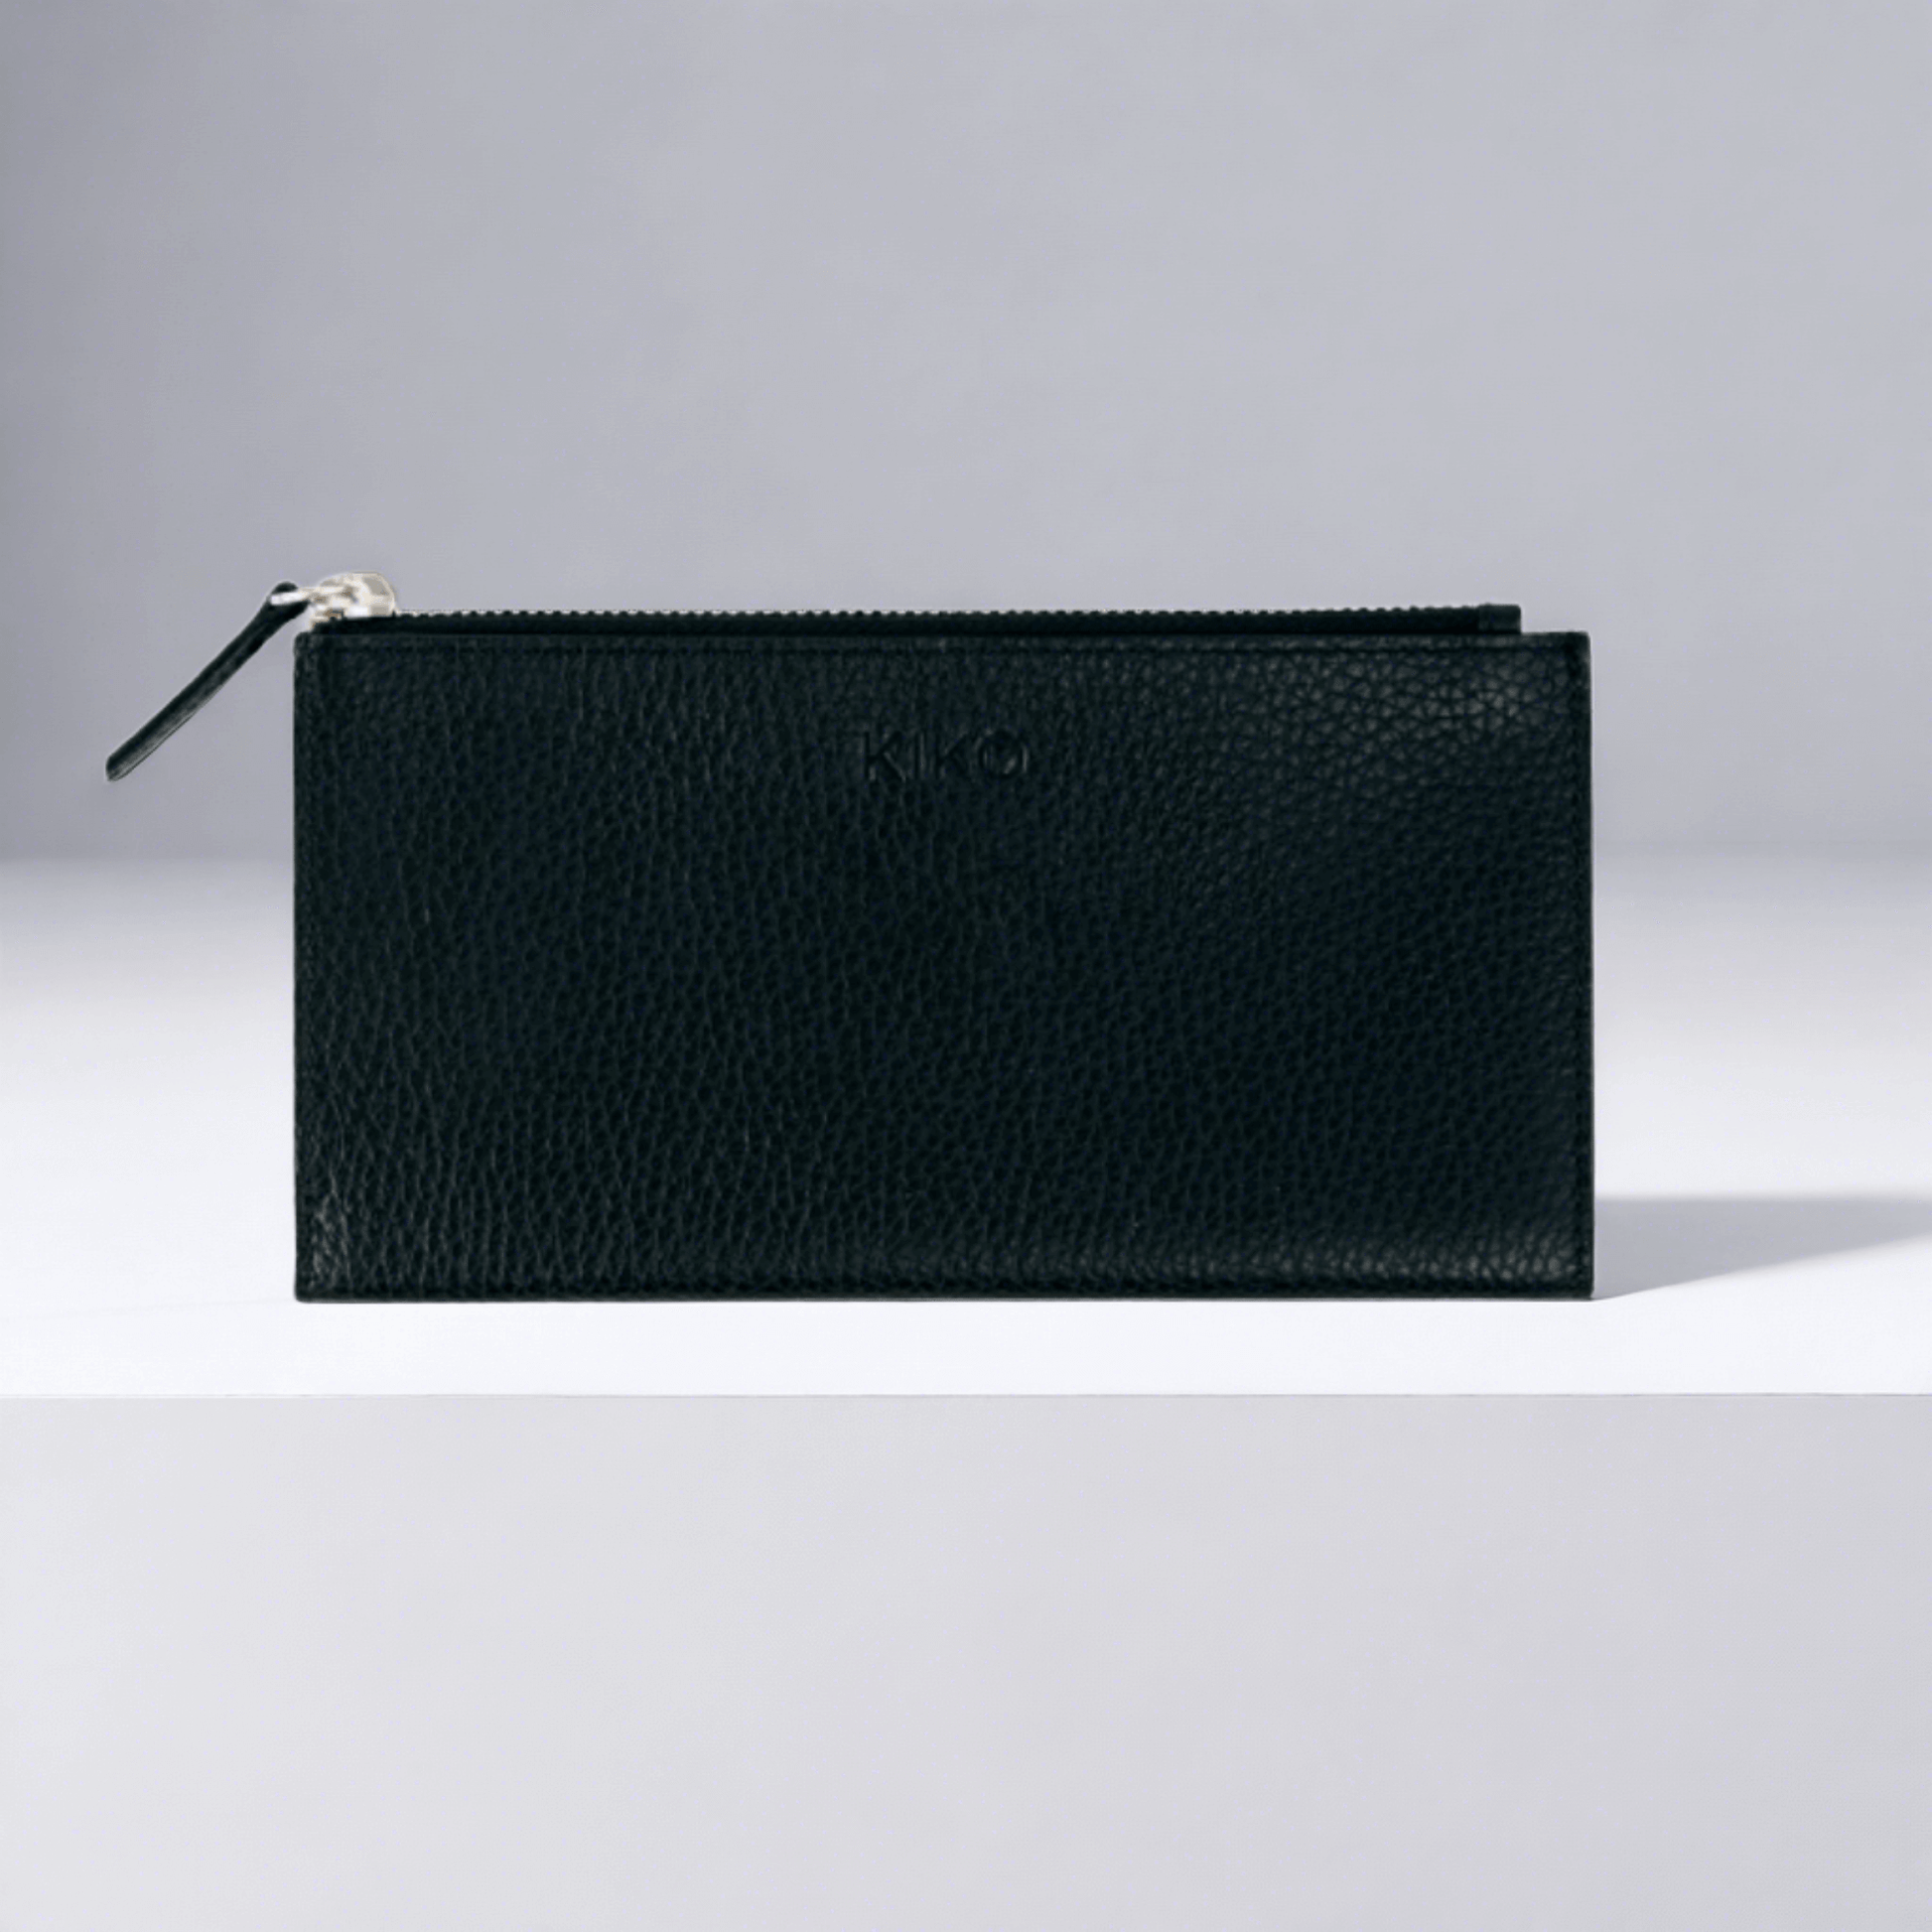 Handbag Wristlet Wallet, Leather Top-Zip